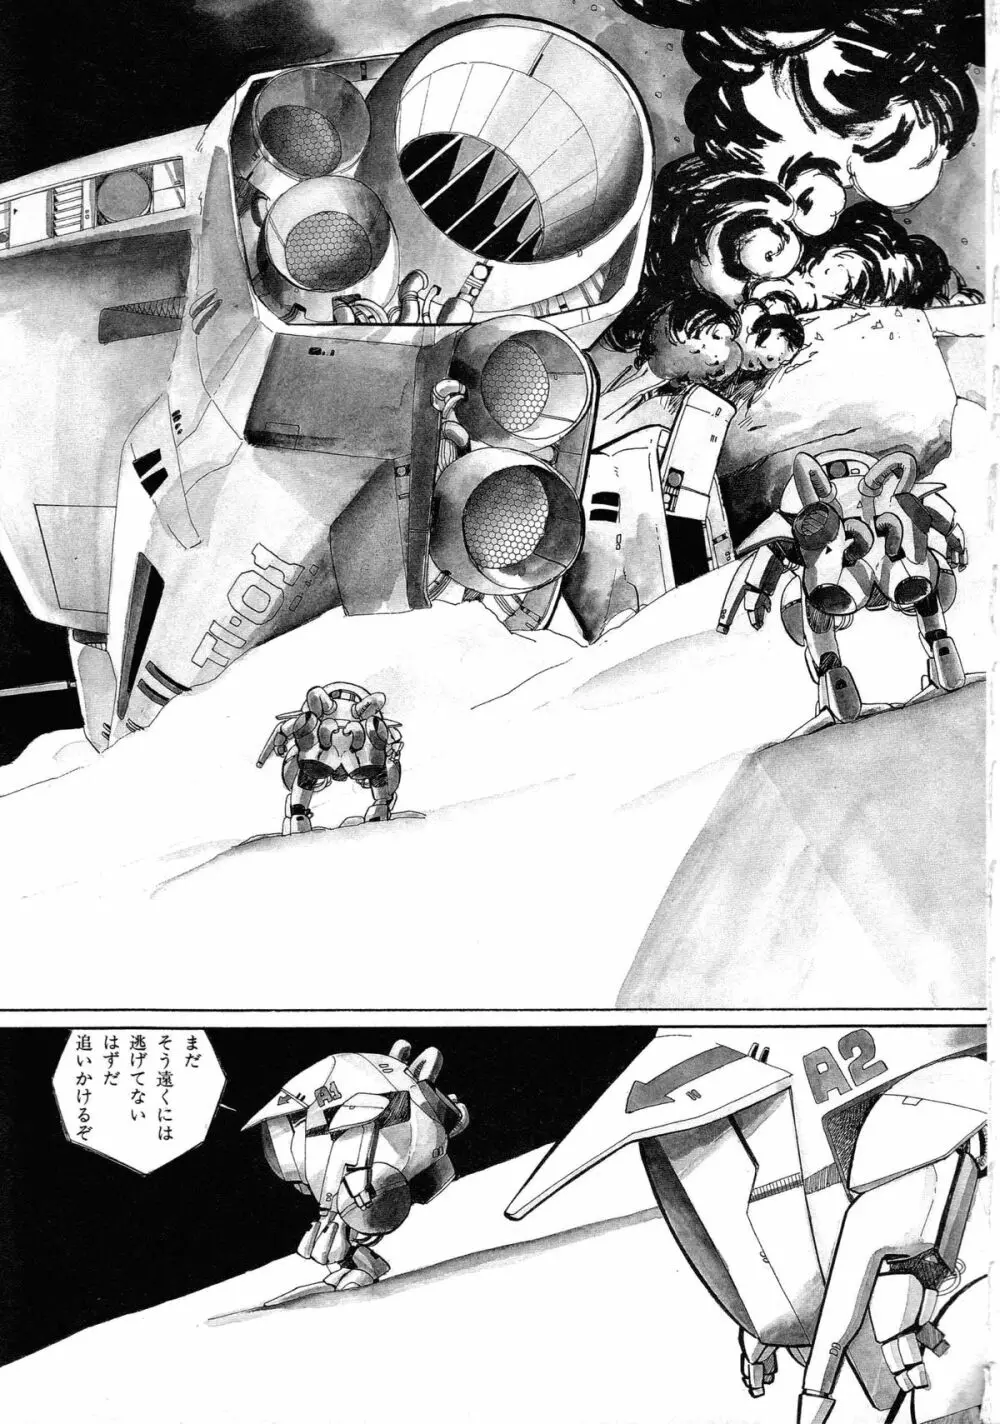 ロボット&美少女傑作選 レモン・ピープル1982-1986 91ページ